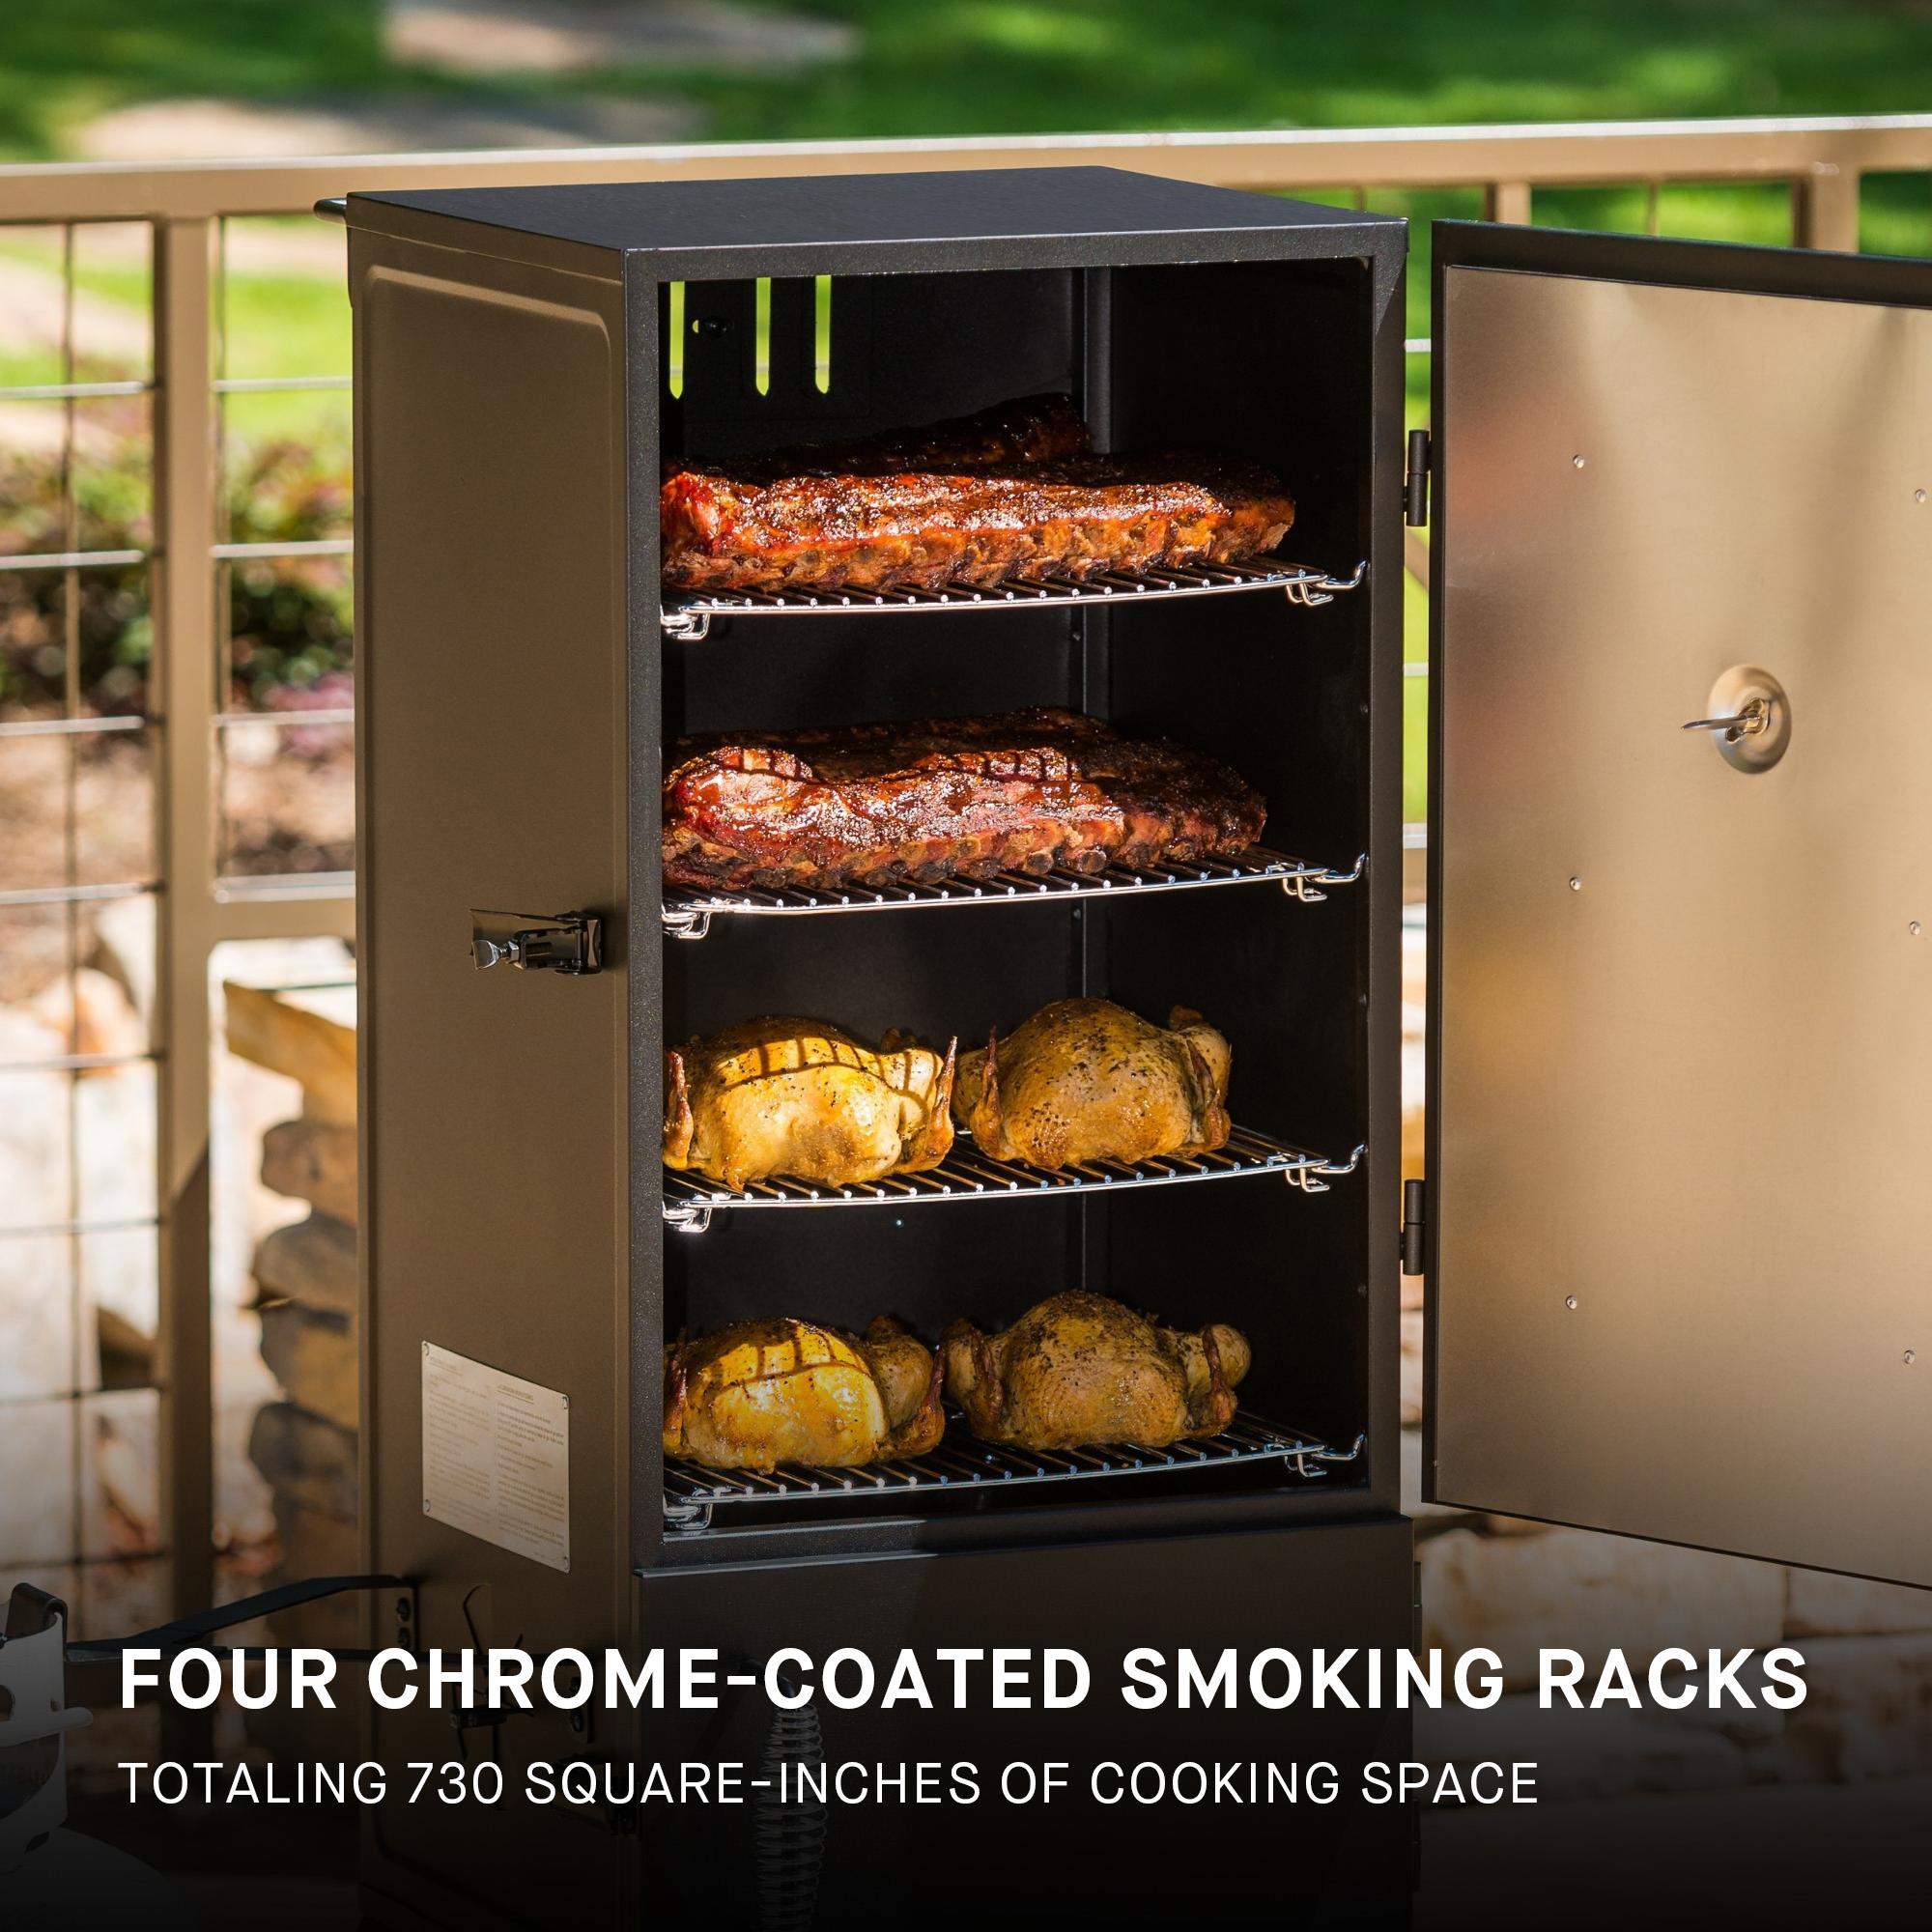 Masterbuilt 30-inch Analog Smoker - 3 Rack